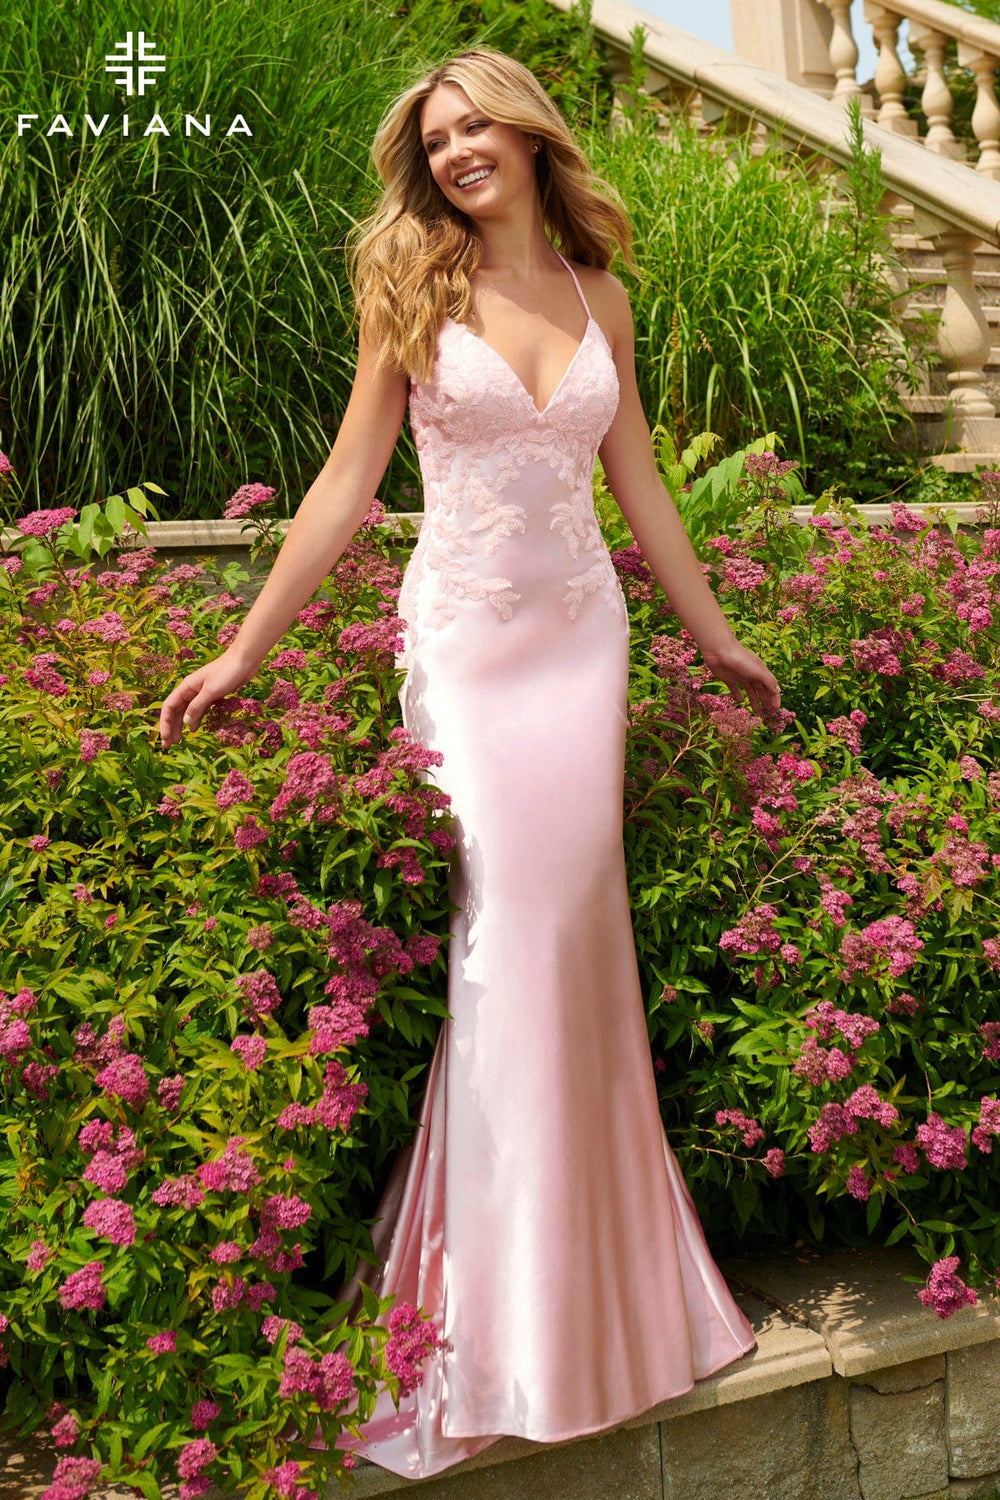 Faviana Prom Dress Faviana 11002 Prom Dress